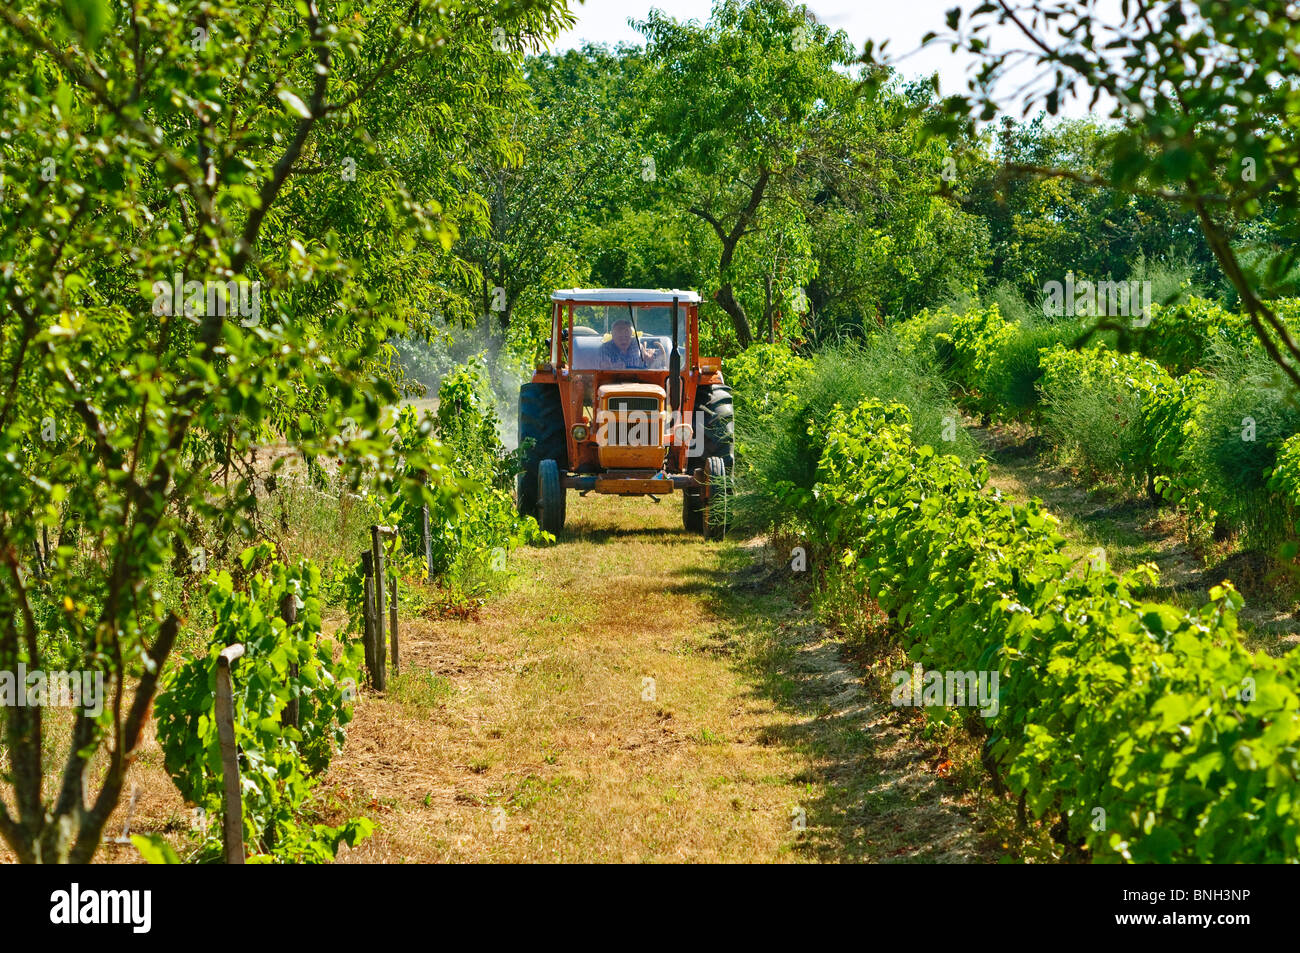 La pulvérisation du tracteur Someca vignes - Indre-et-Loire, France. Banque D'Images